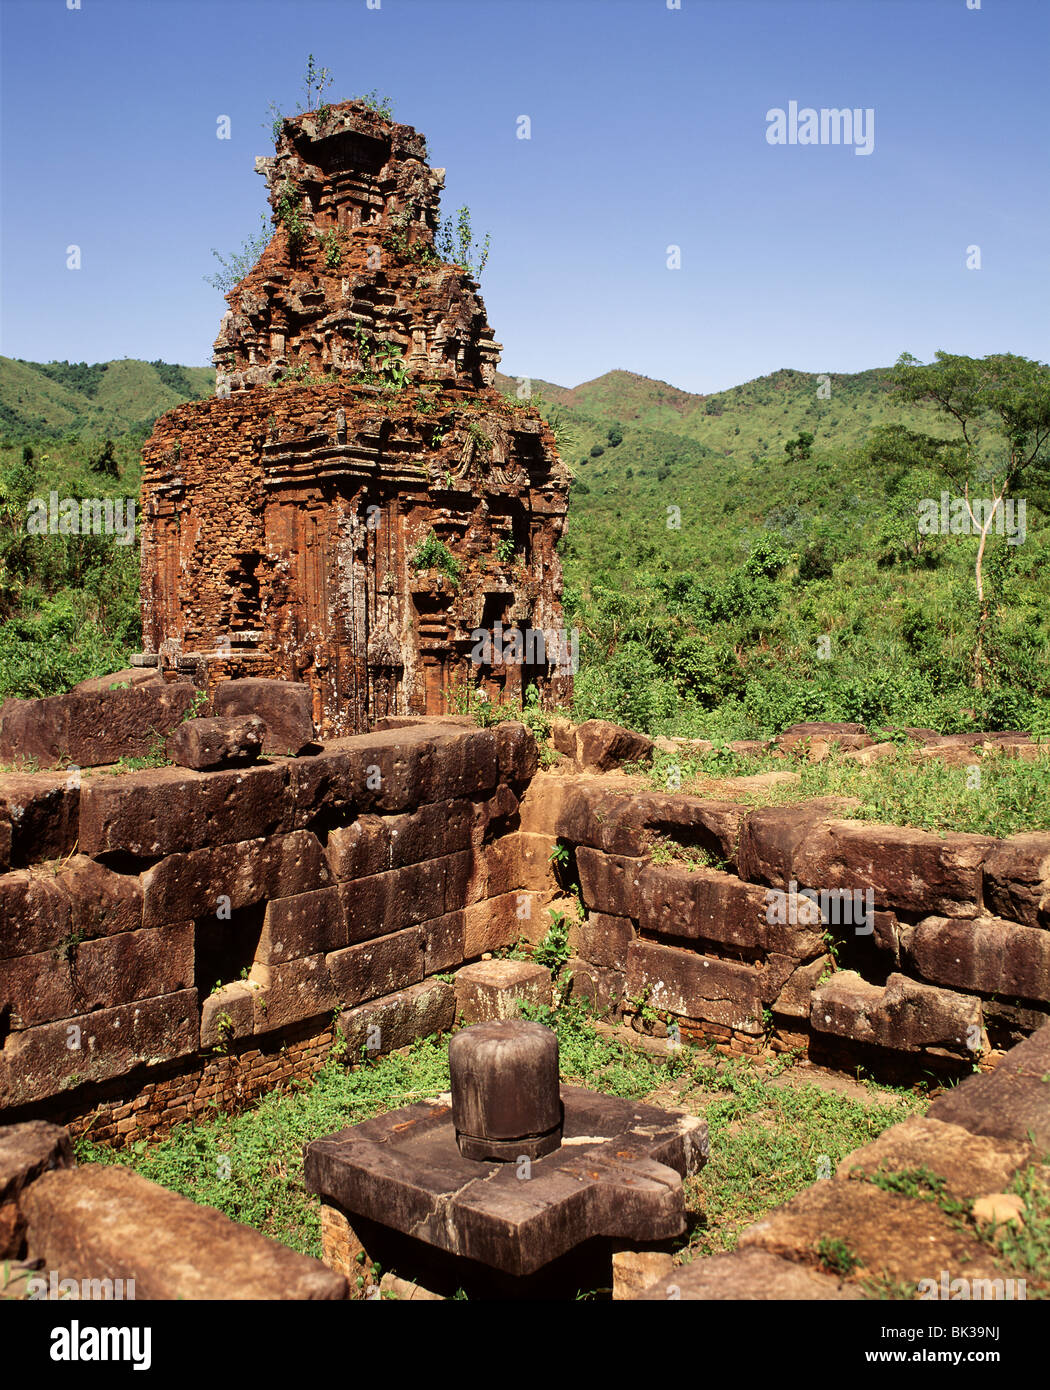 Ruines du sanctuaire Cham de My Son, datant du 7e au 10e siècles, le Vietnam, l'Indochine, l'Asie du Sud-Est, Asie Banque D'Images